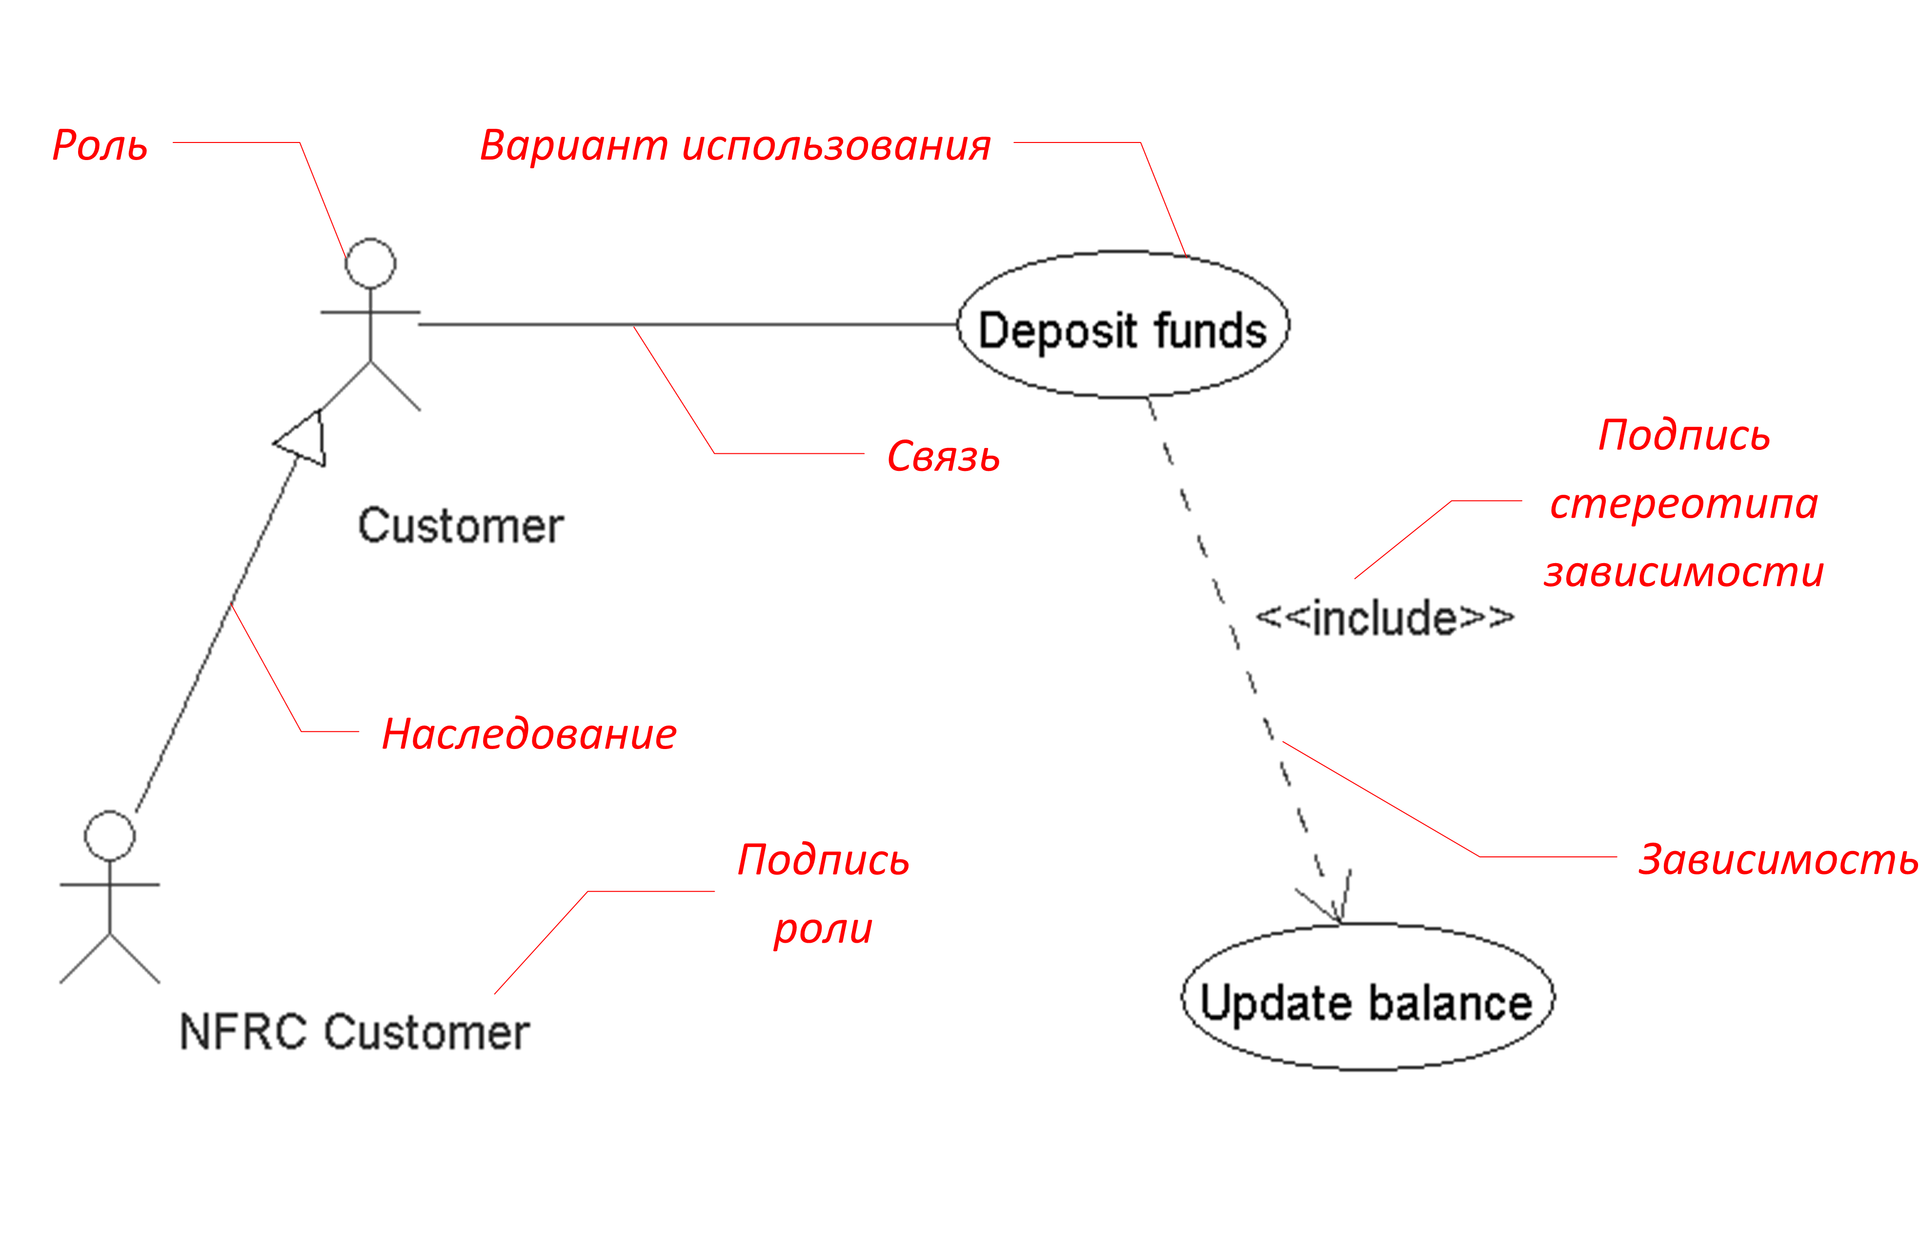 Реализация интерактивных диаграмм с помощью ООП на примере прототипа редактора UML-диаграмм. Часть 1 - 6